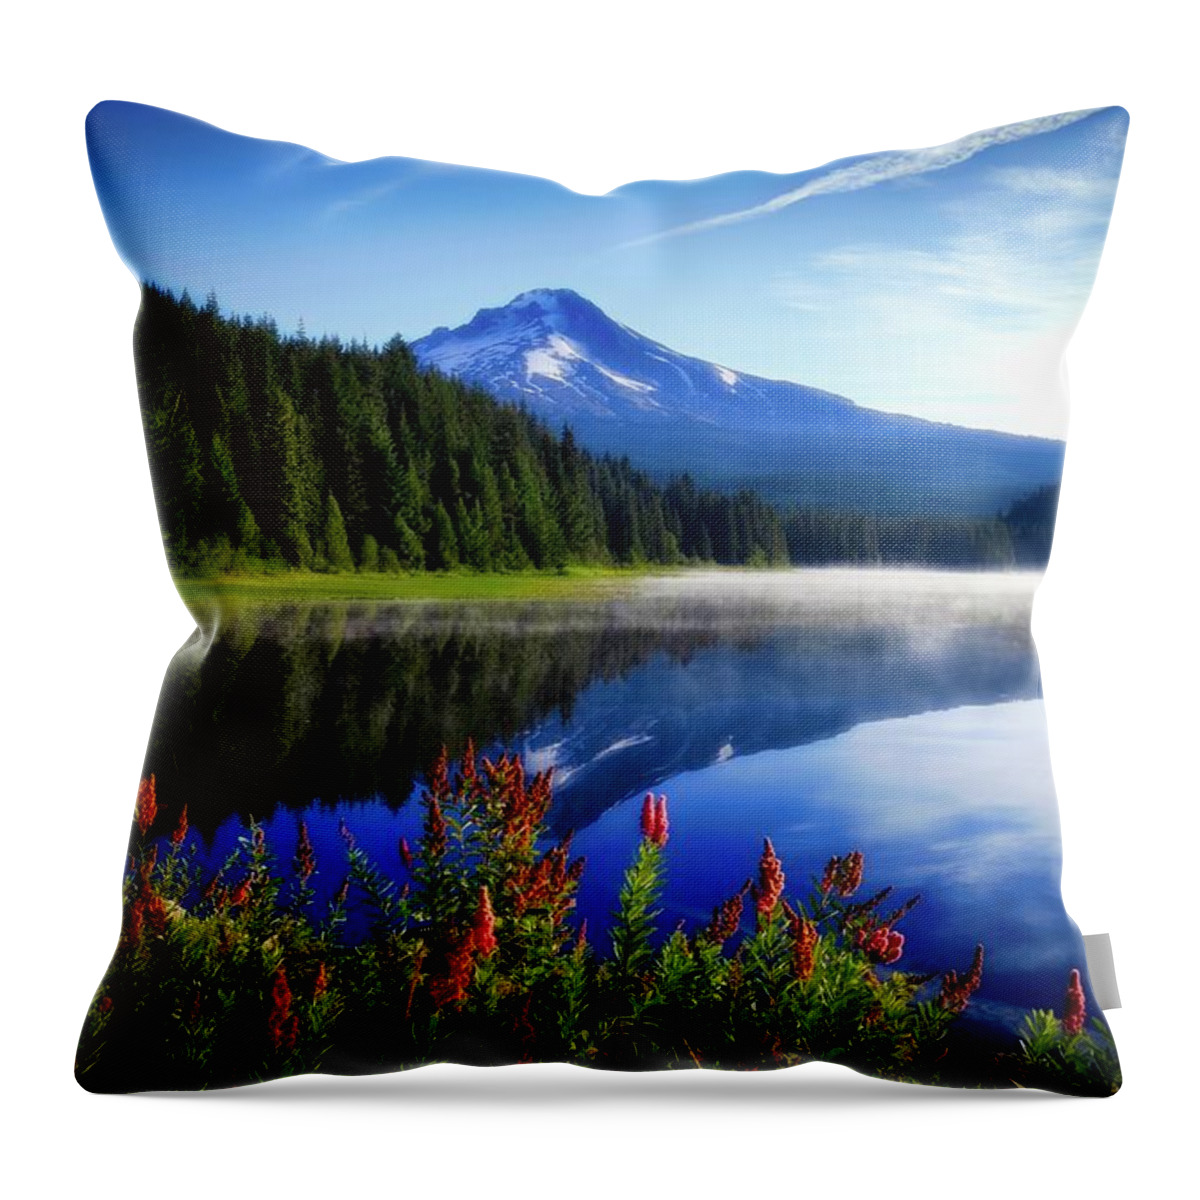 Dream Of Lake Trillium Throw Pillow featuring the photograph Dream of Lake Trillium by Lynn Hopwood